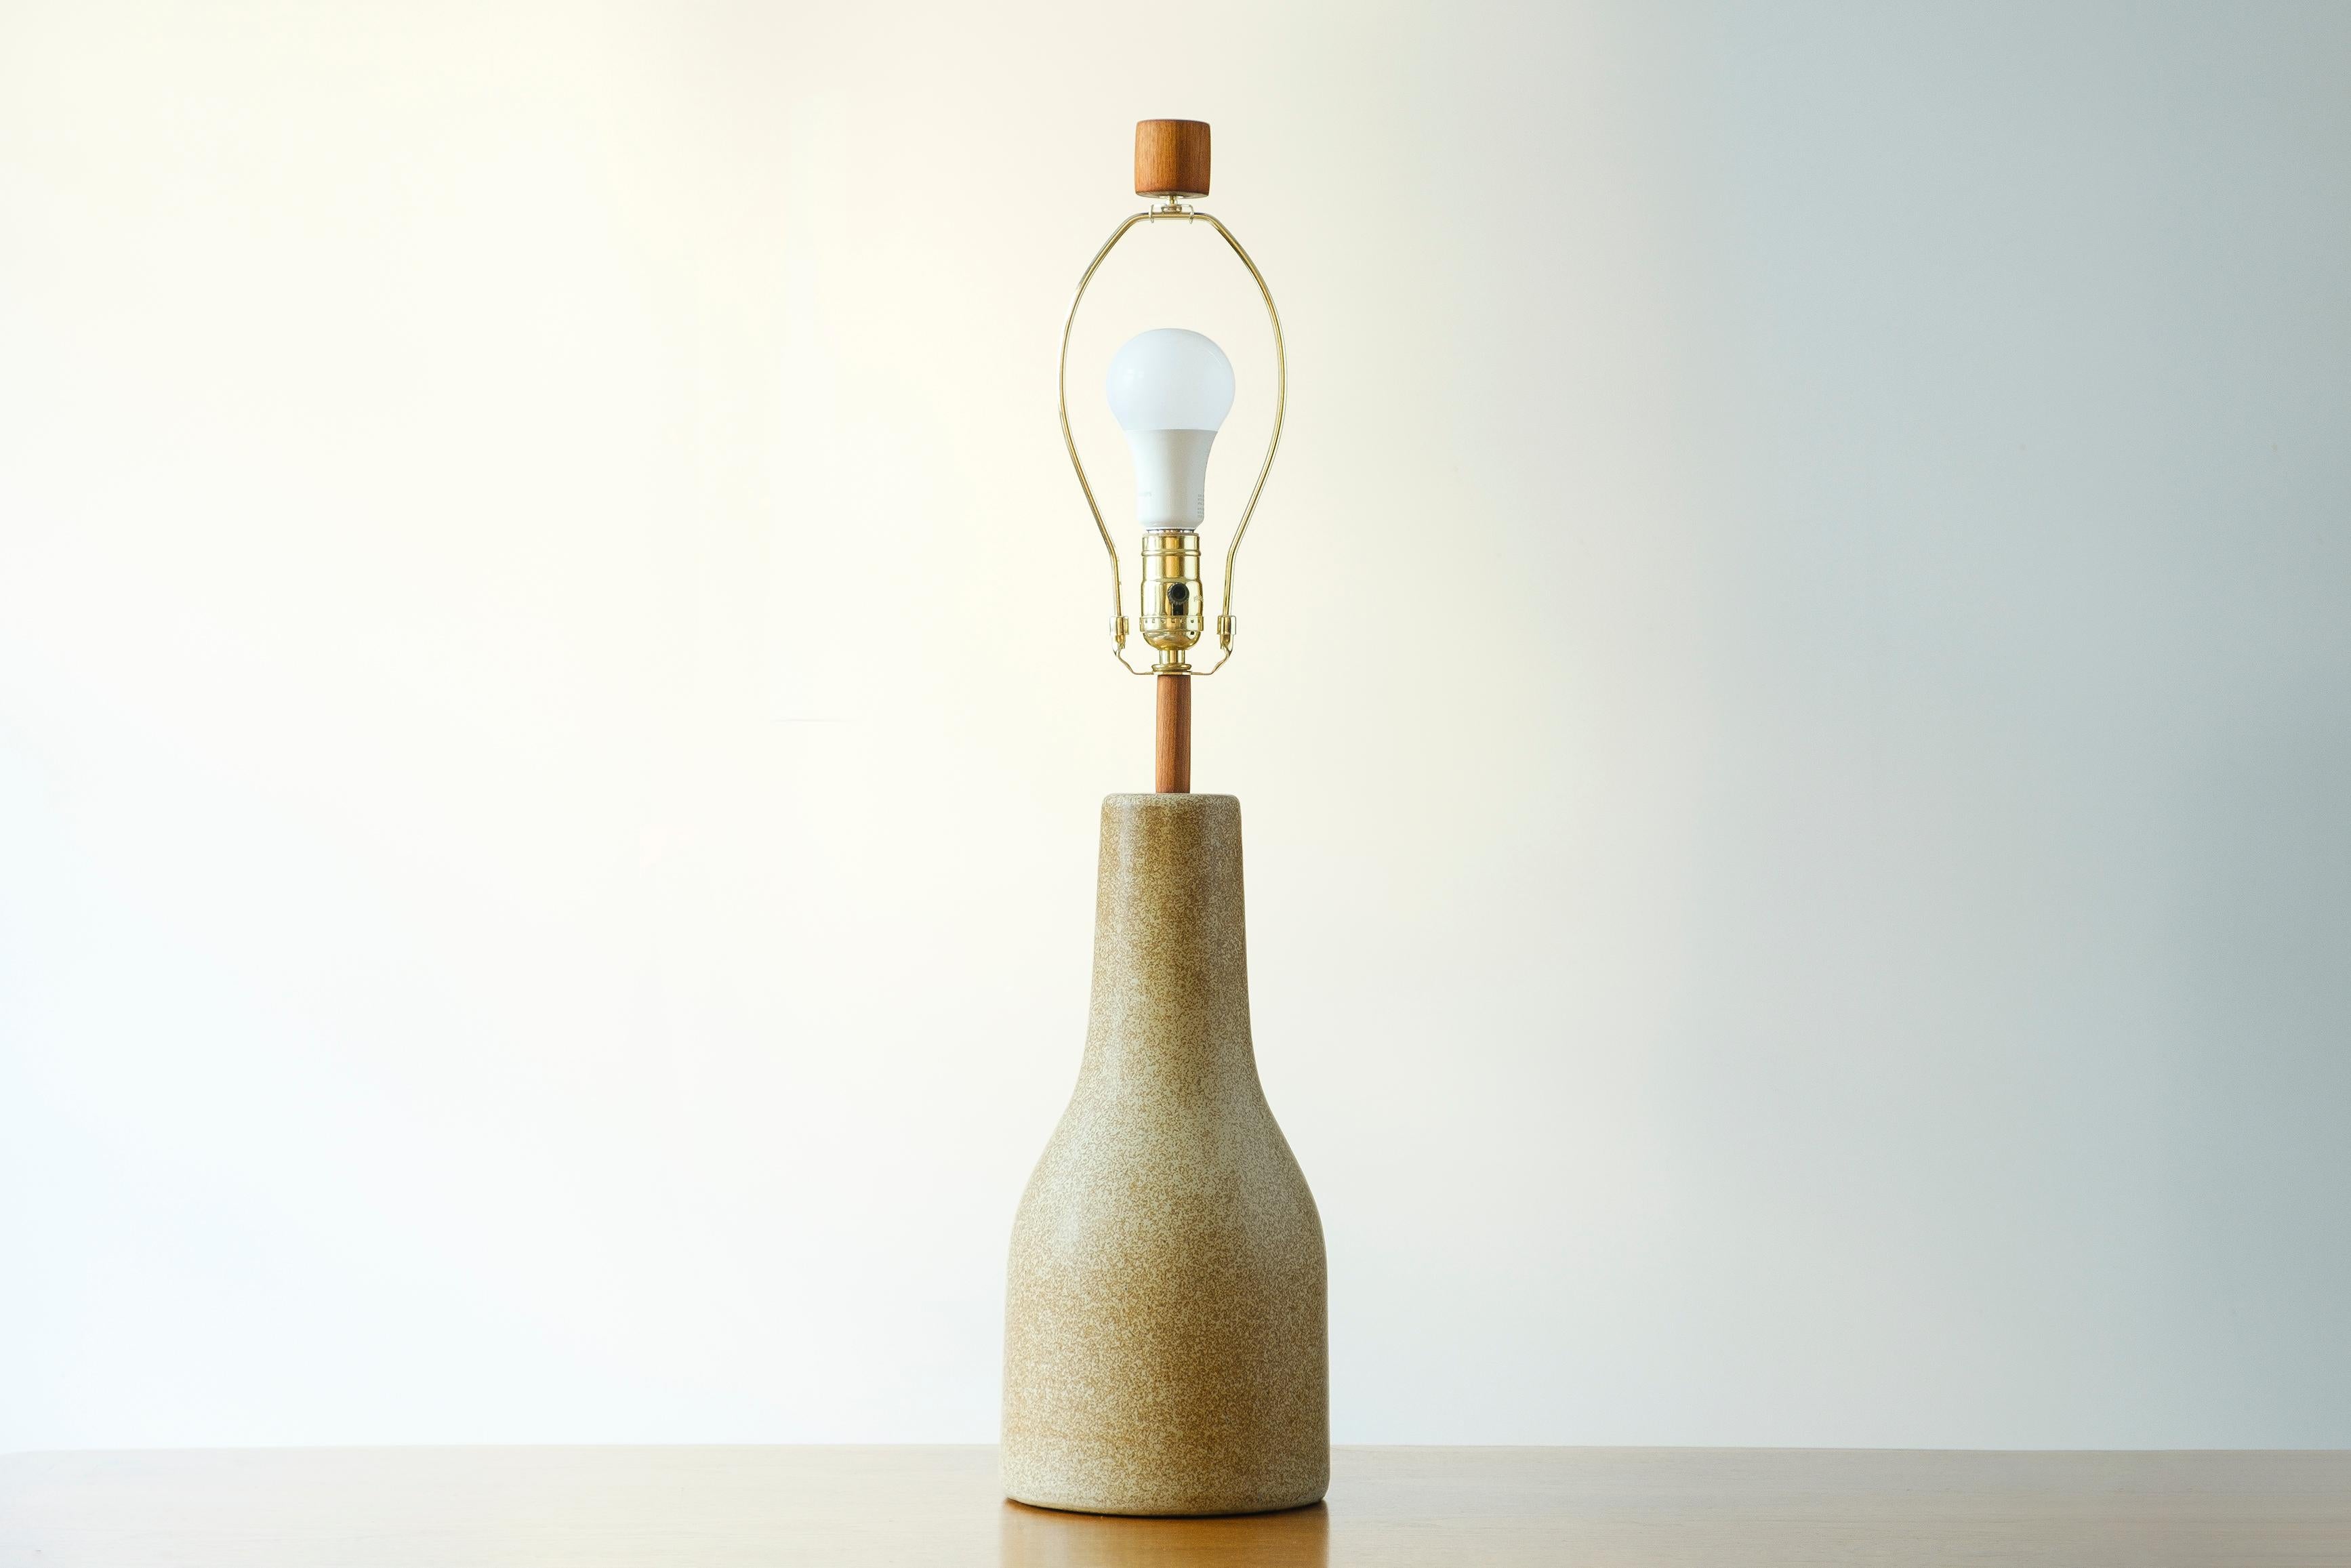 Glazed Martz / Marshall Studios Ceramic Table Lamp, Tan with tiny Neck